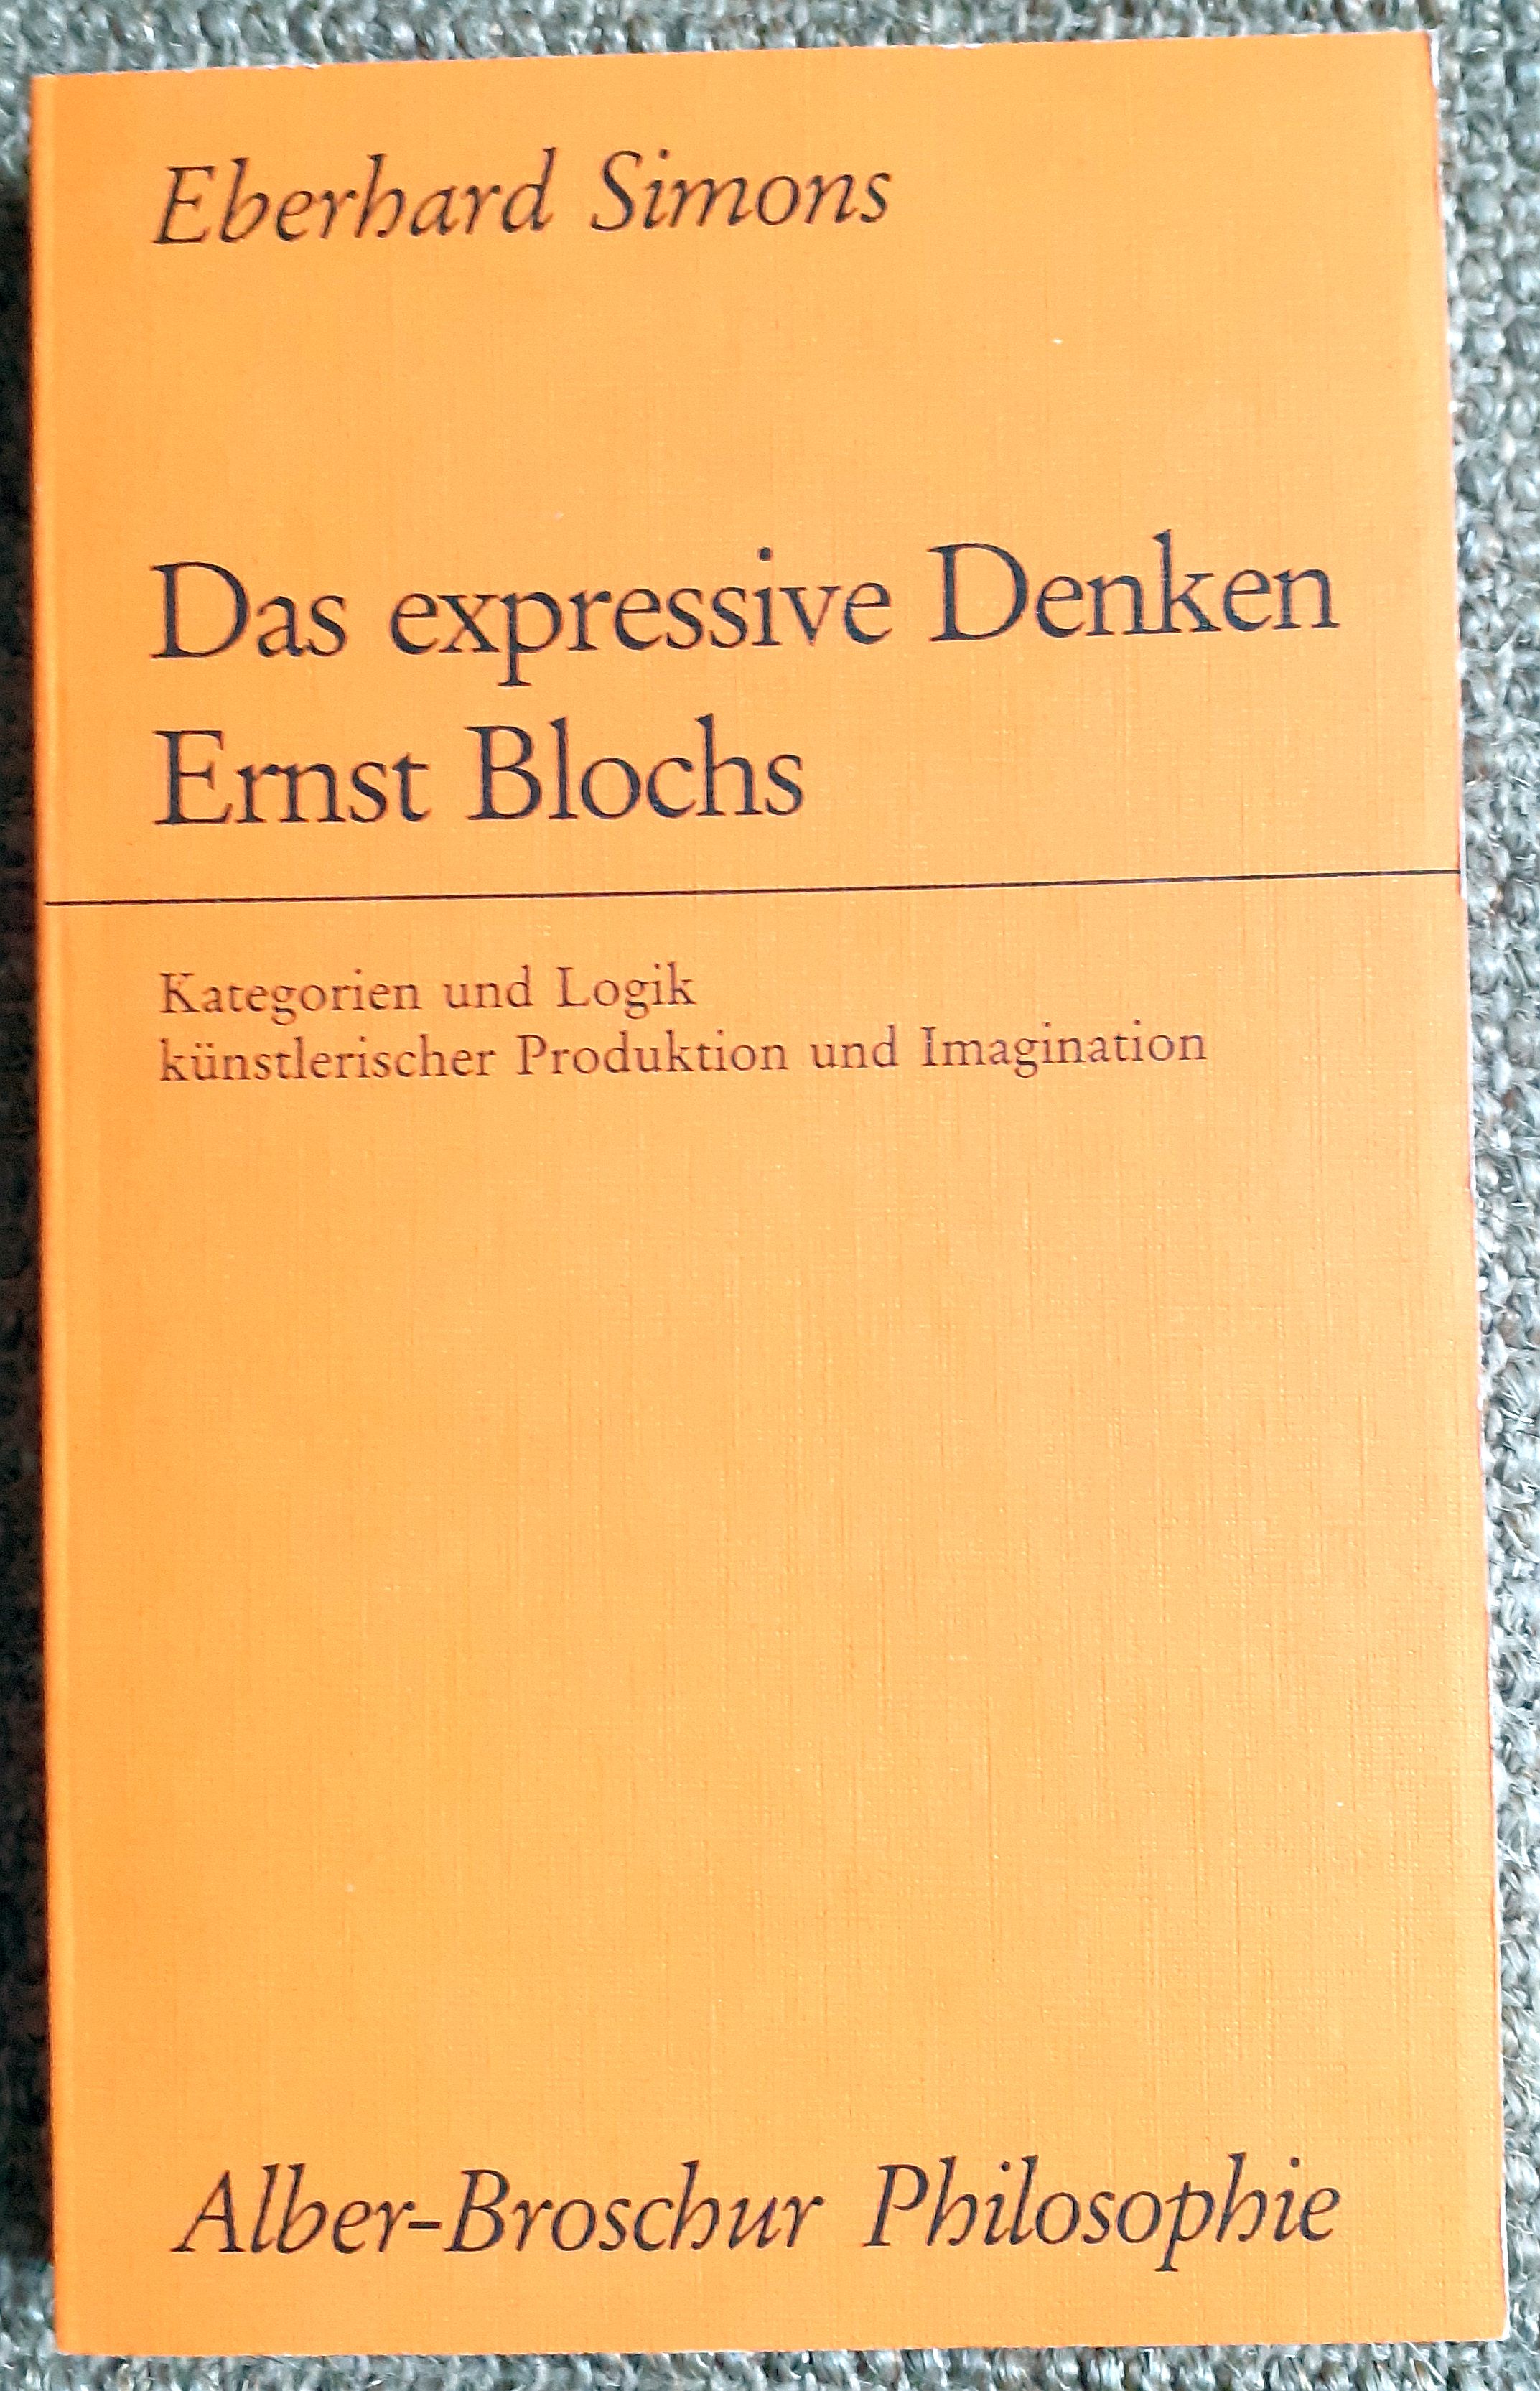 Das expressive Denken Ernst Blochs : Kategorien und Logik künstlerische Produktion und Imagination - Simons, Eberhard